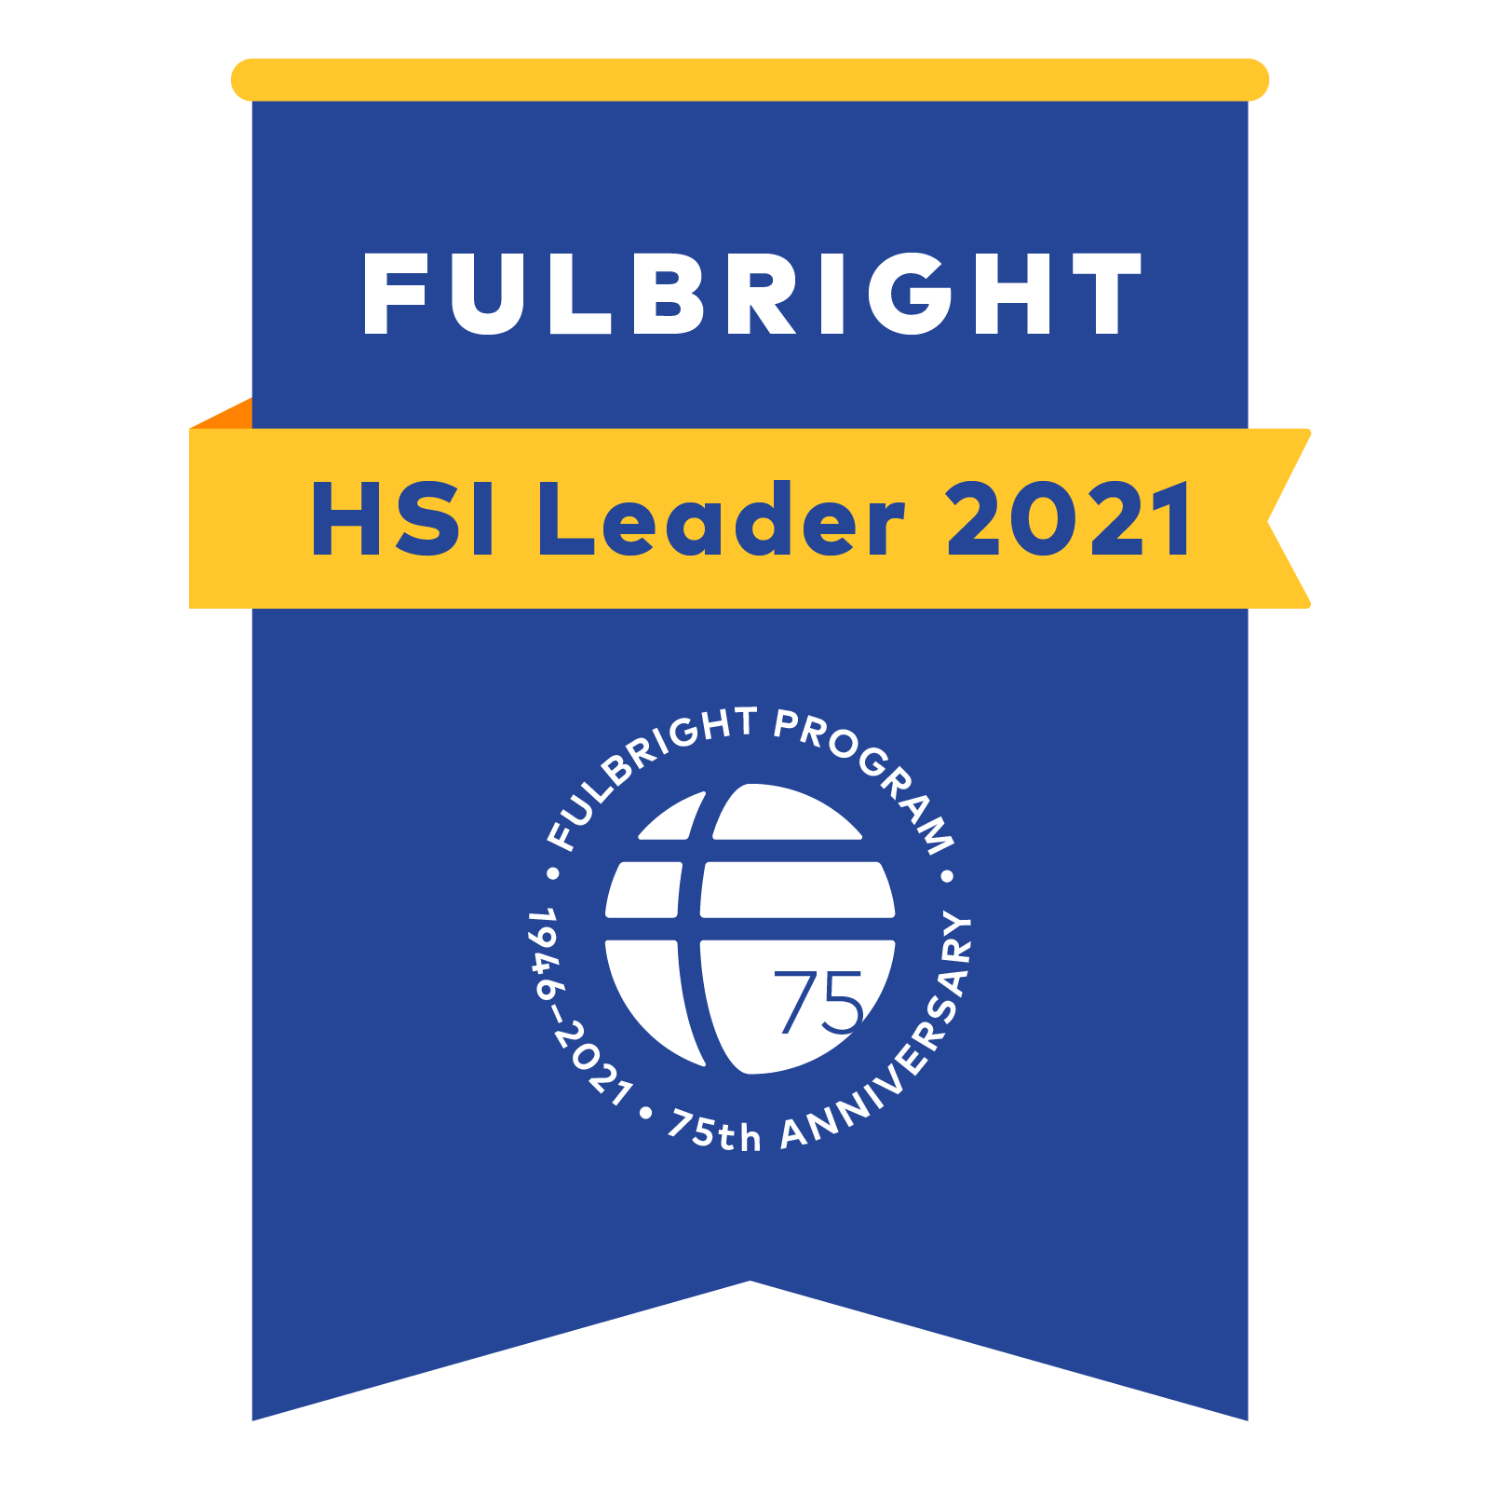 Fullbright HSI Leader 2021 award